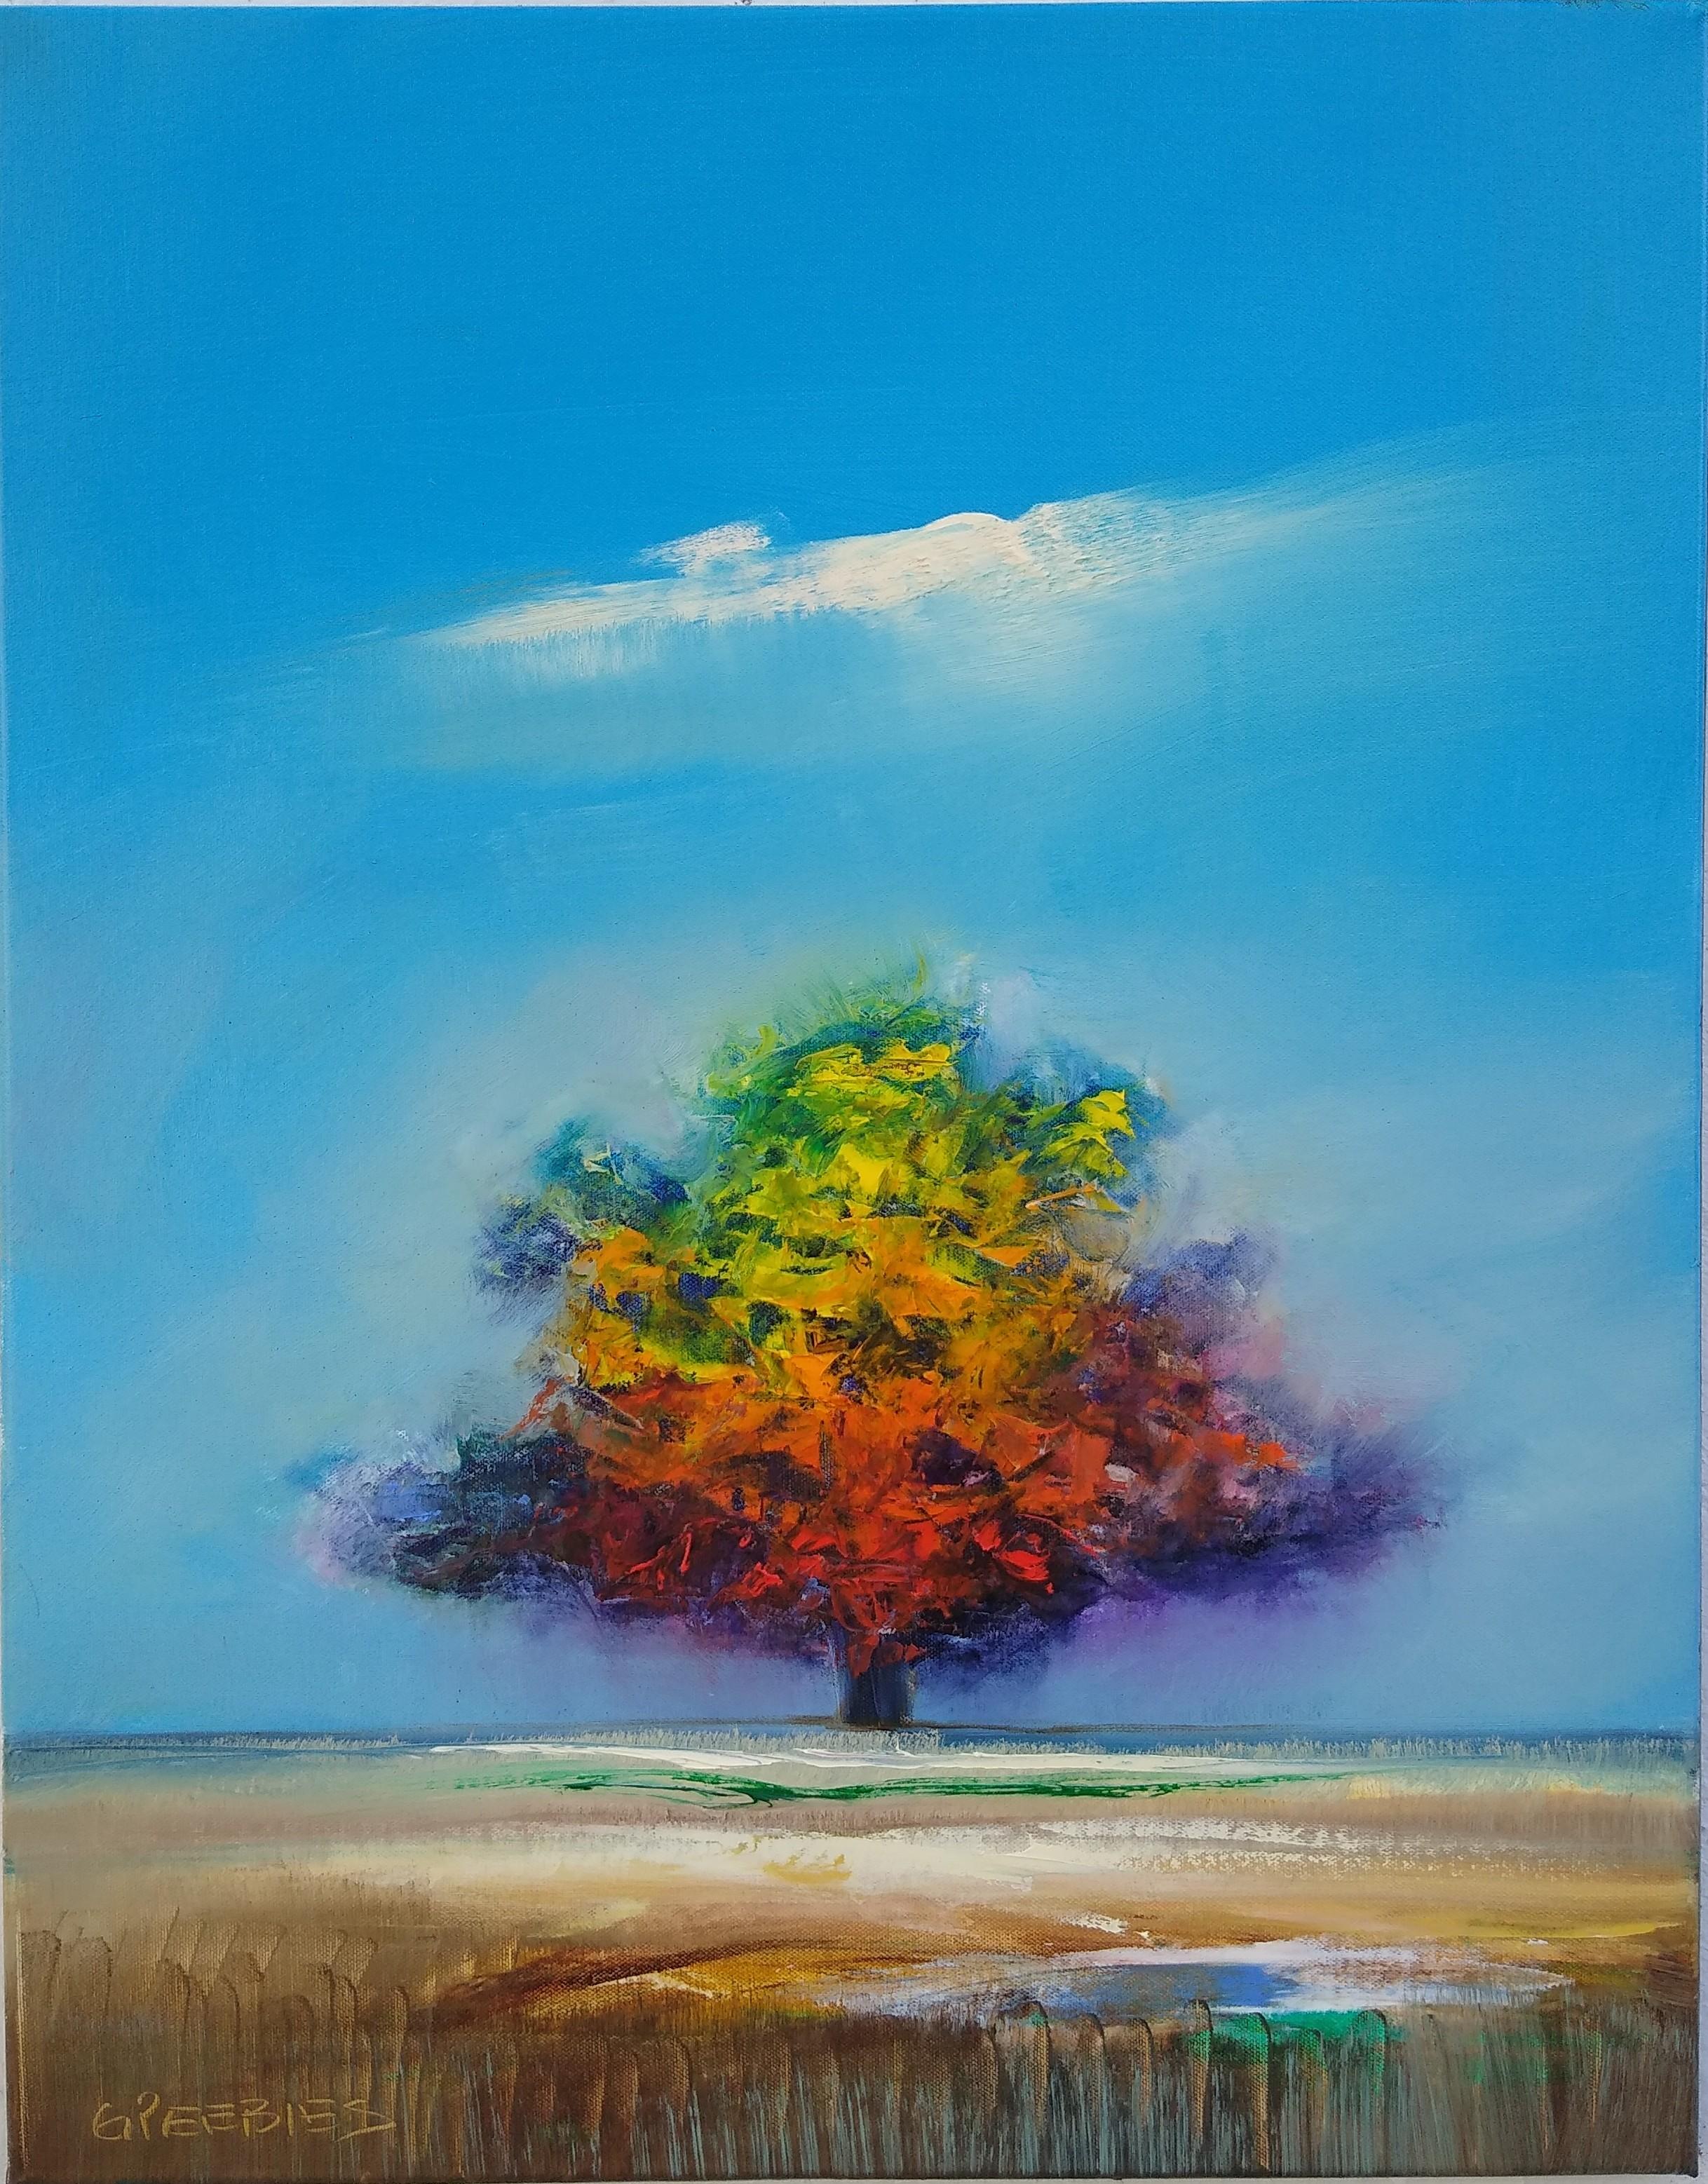 Seasons Change, Oil Painting - Art by George Peebles